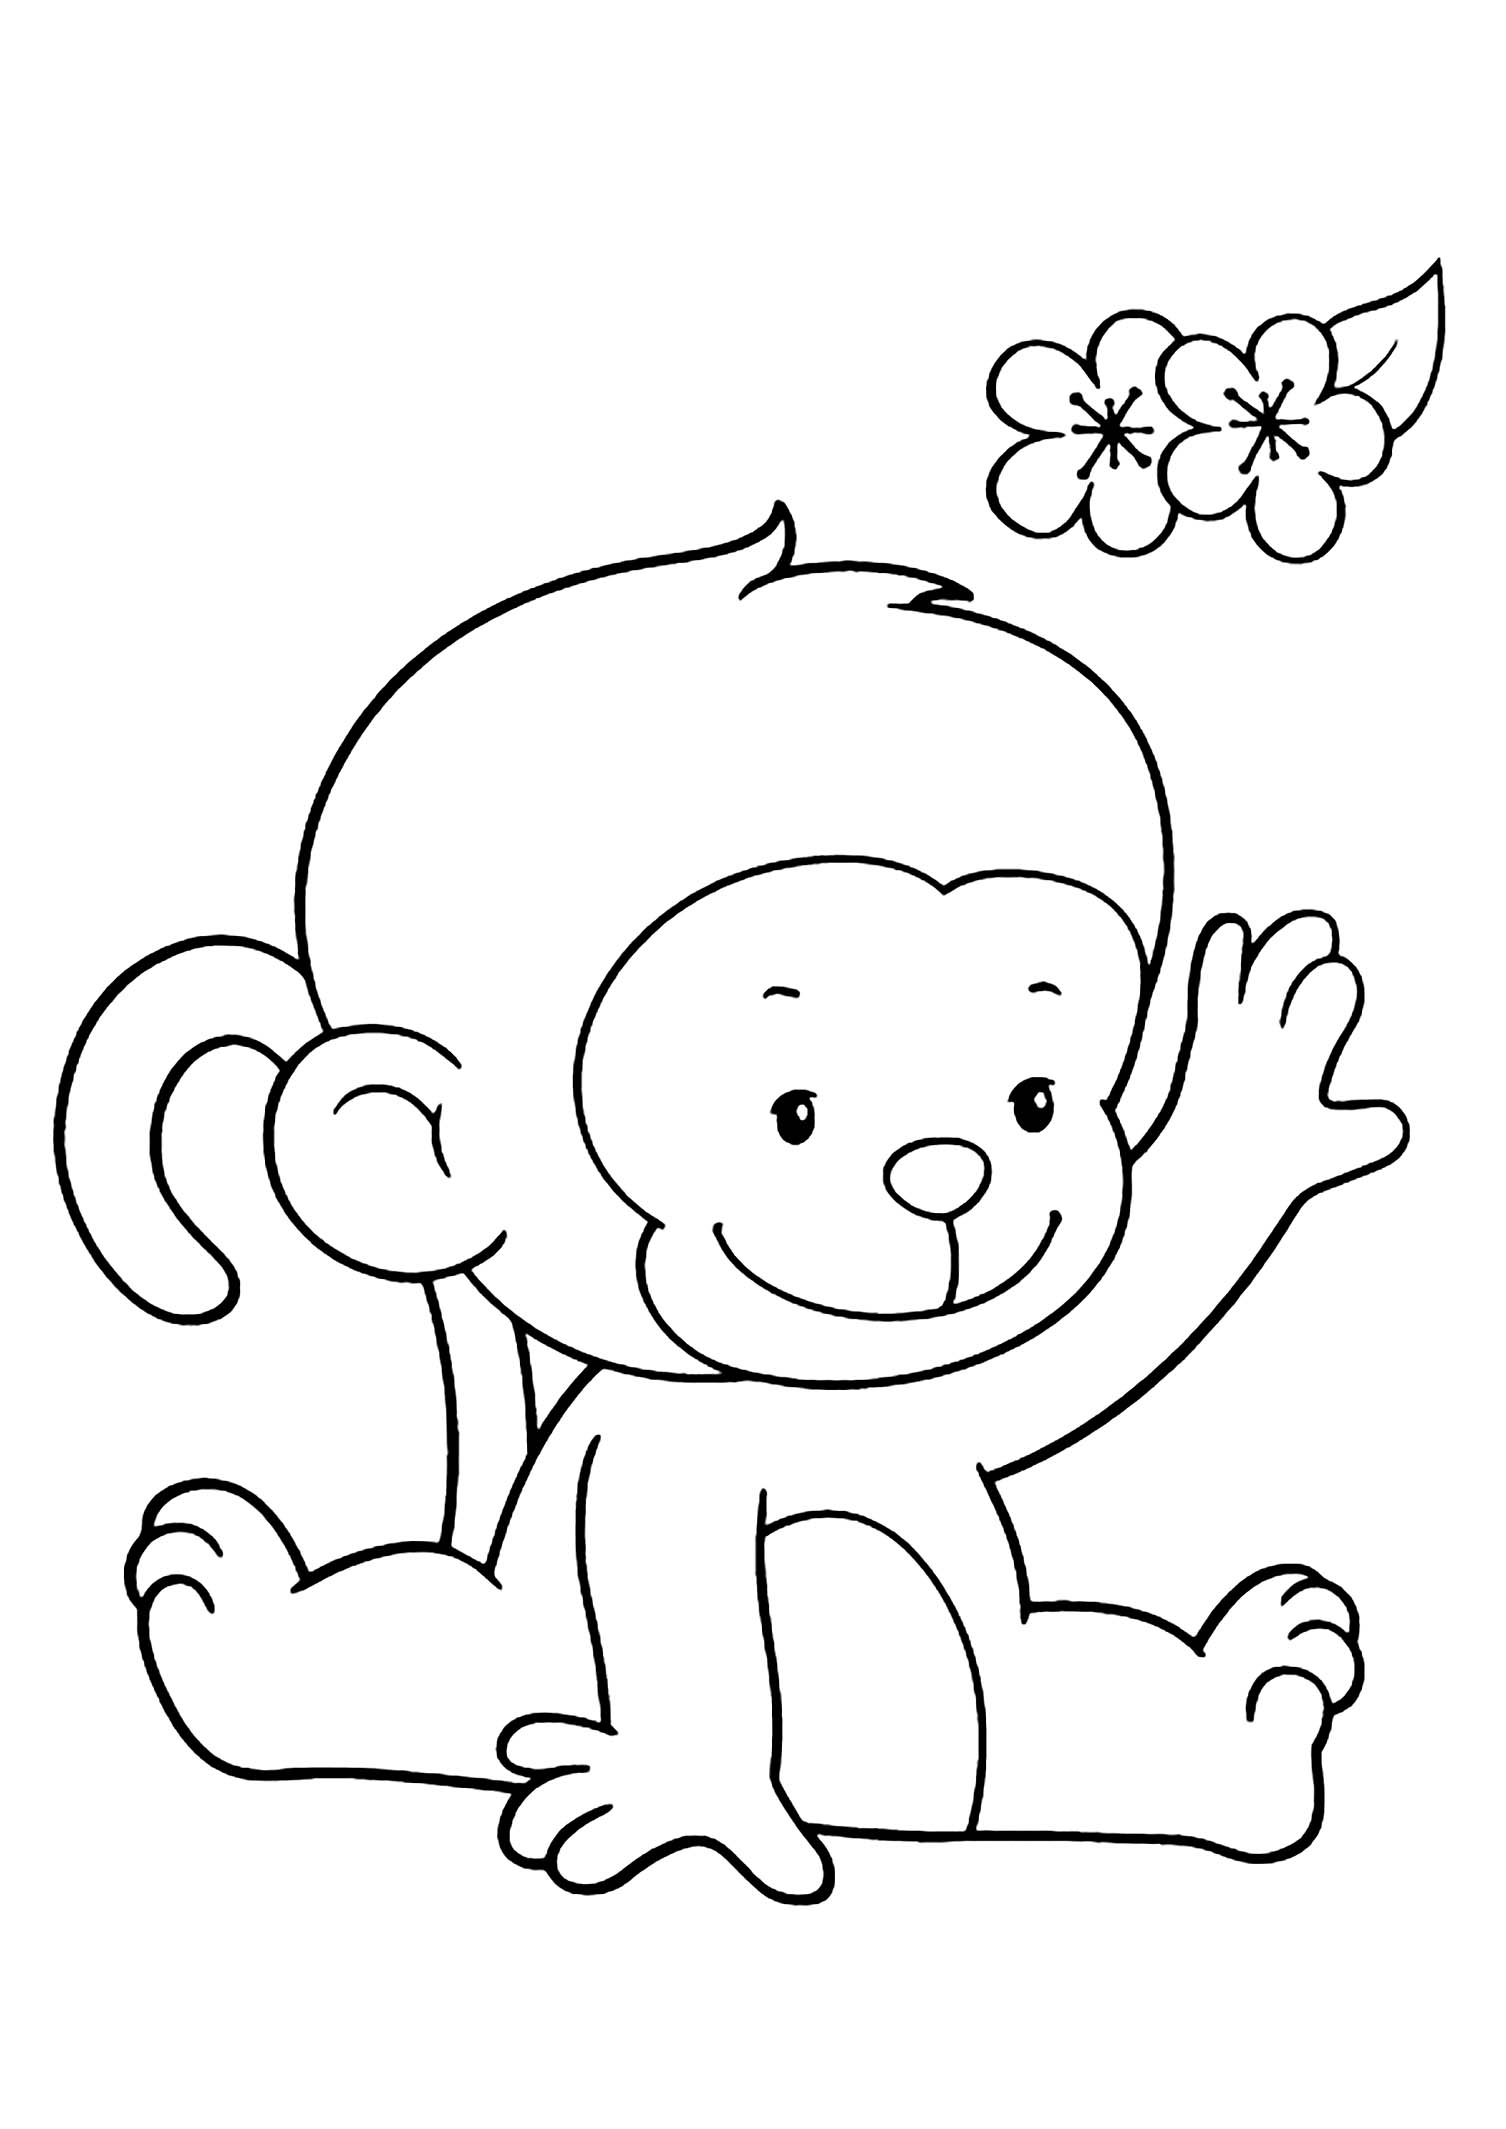 Coloriage sympa de singe à imprimer et colorier